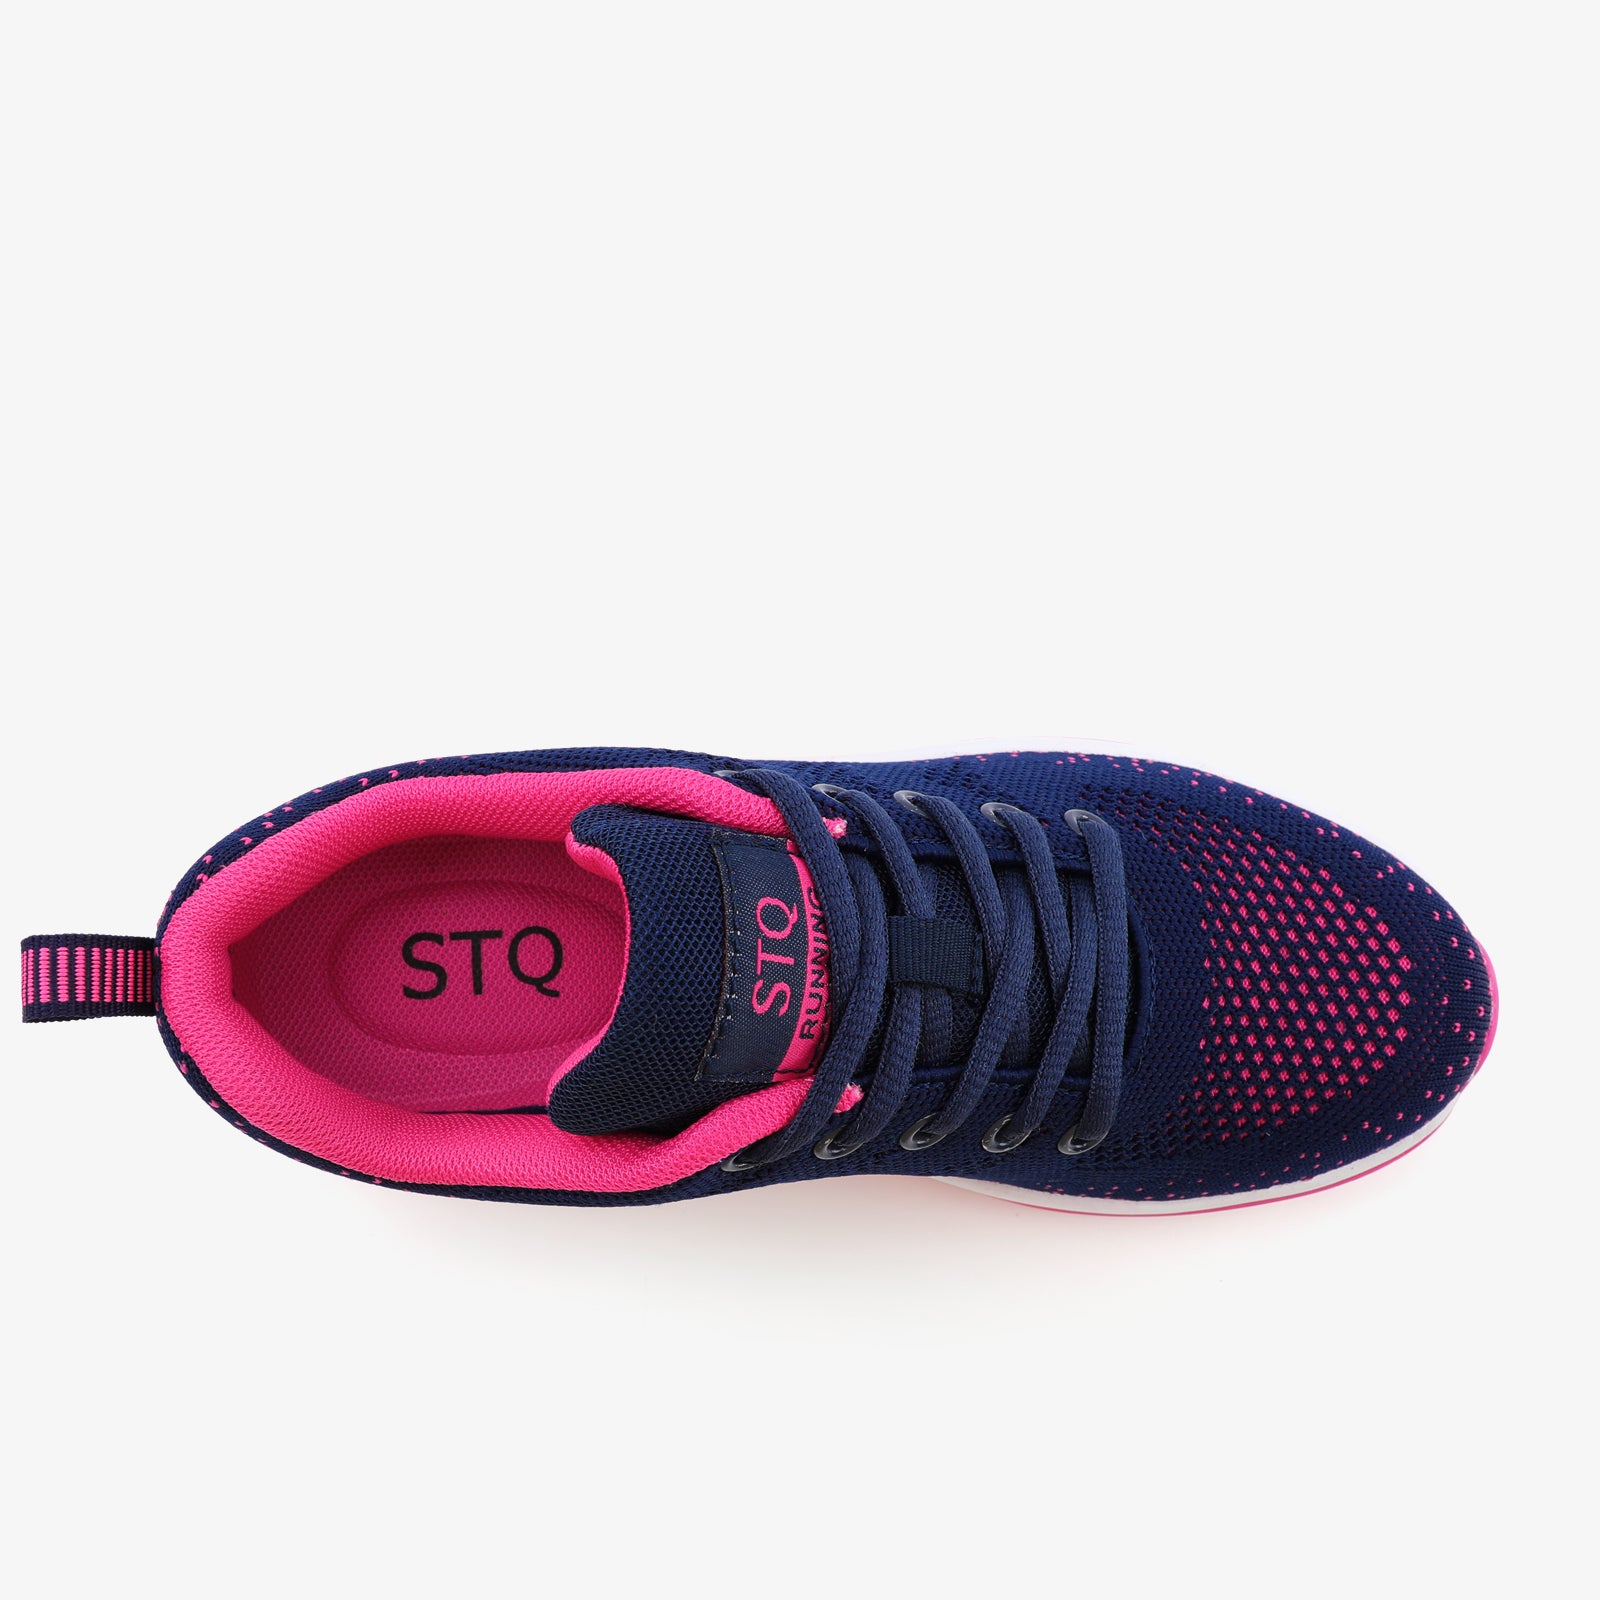 stq-fashion-sneakers-air-cushion-running-view